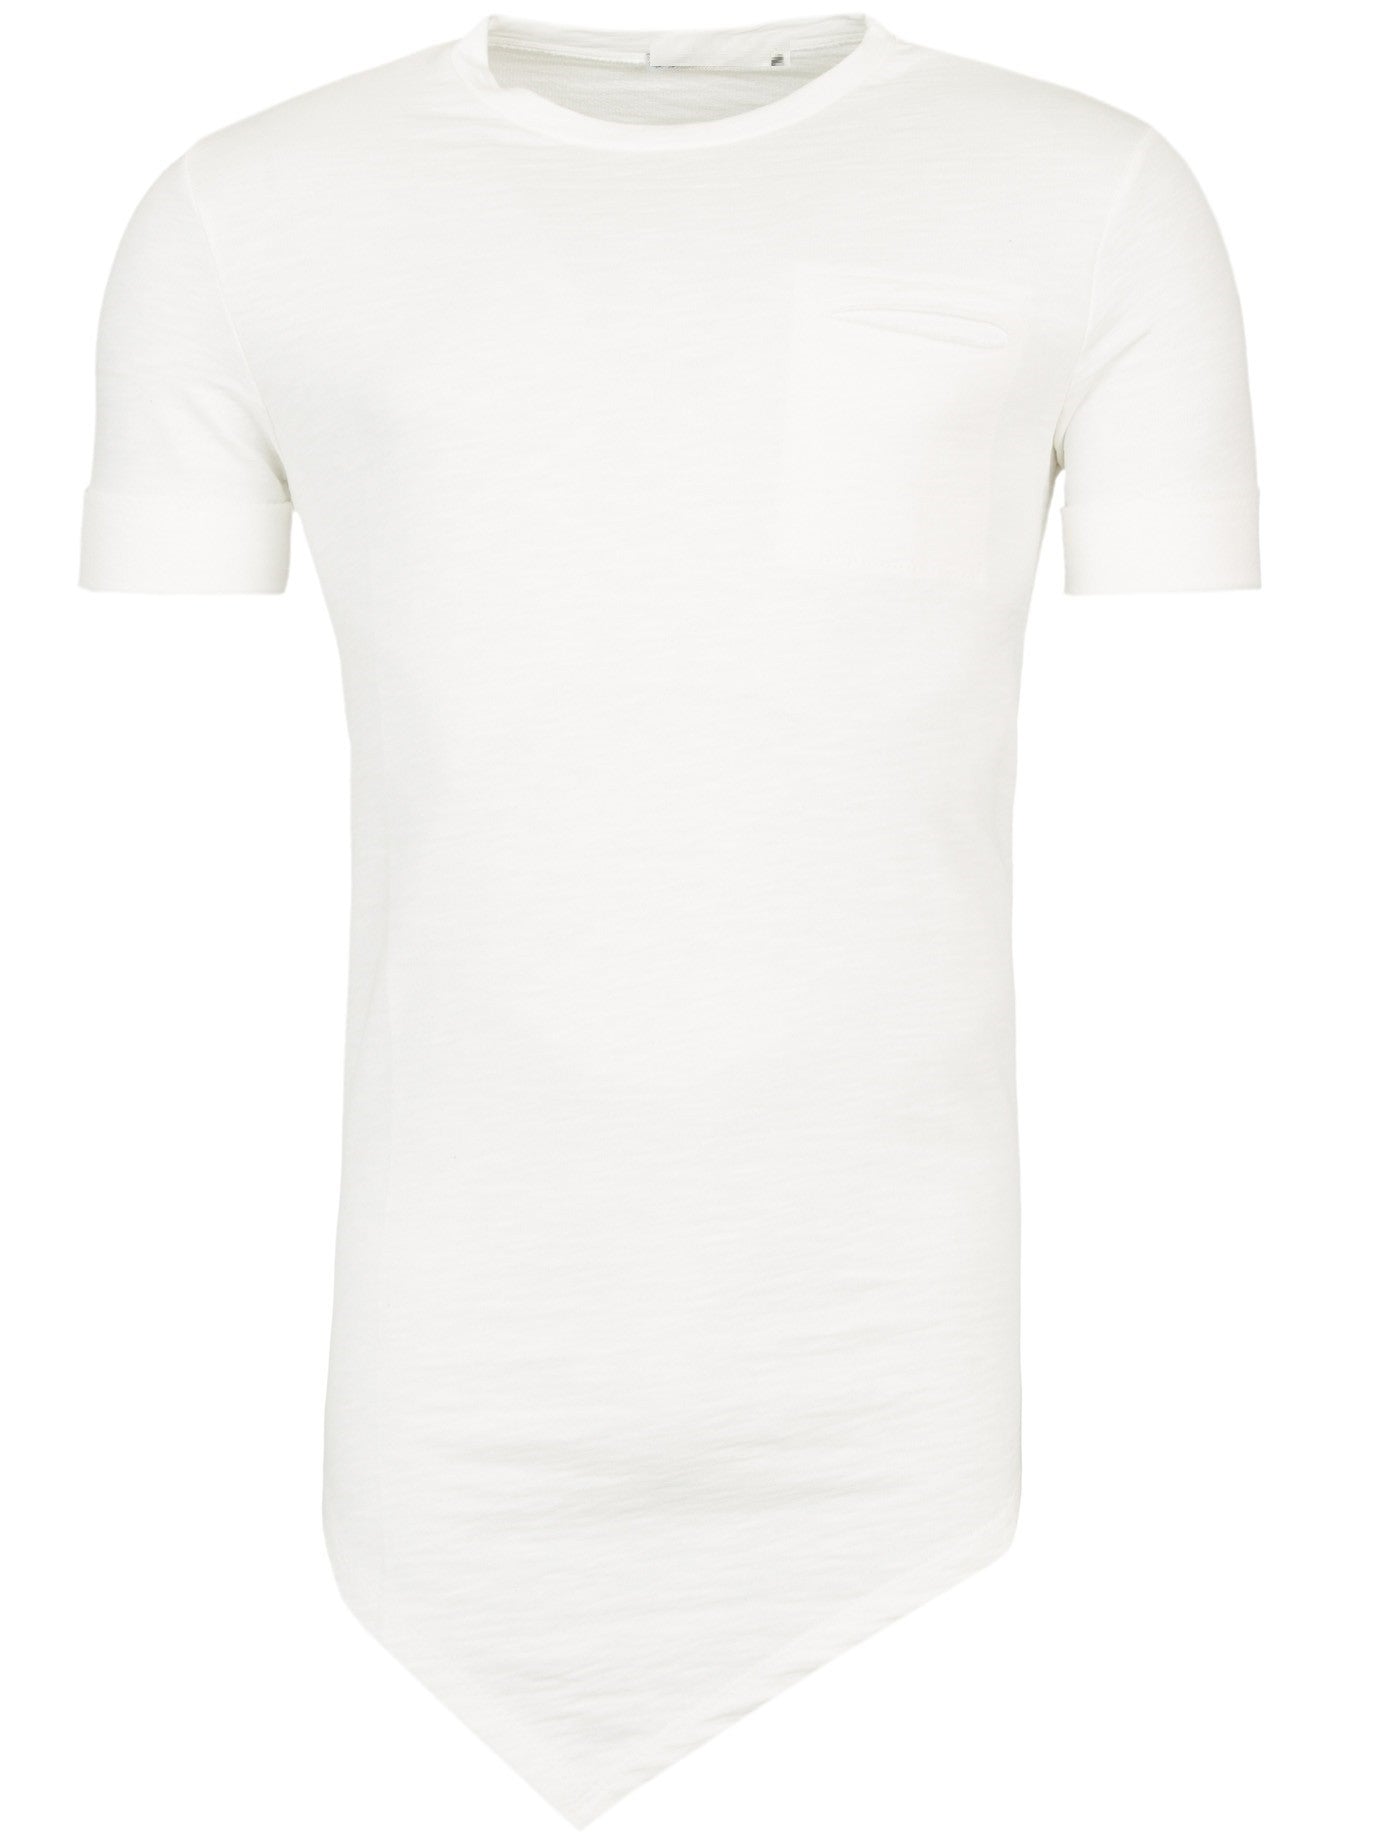 Y&R Men Asymmetrical Cut Pocket T-Shirt - White